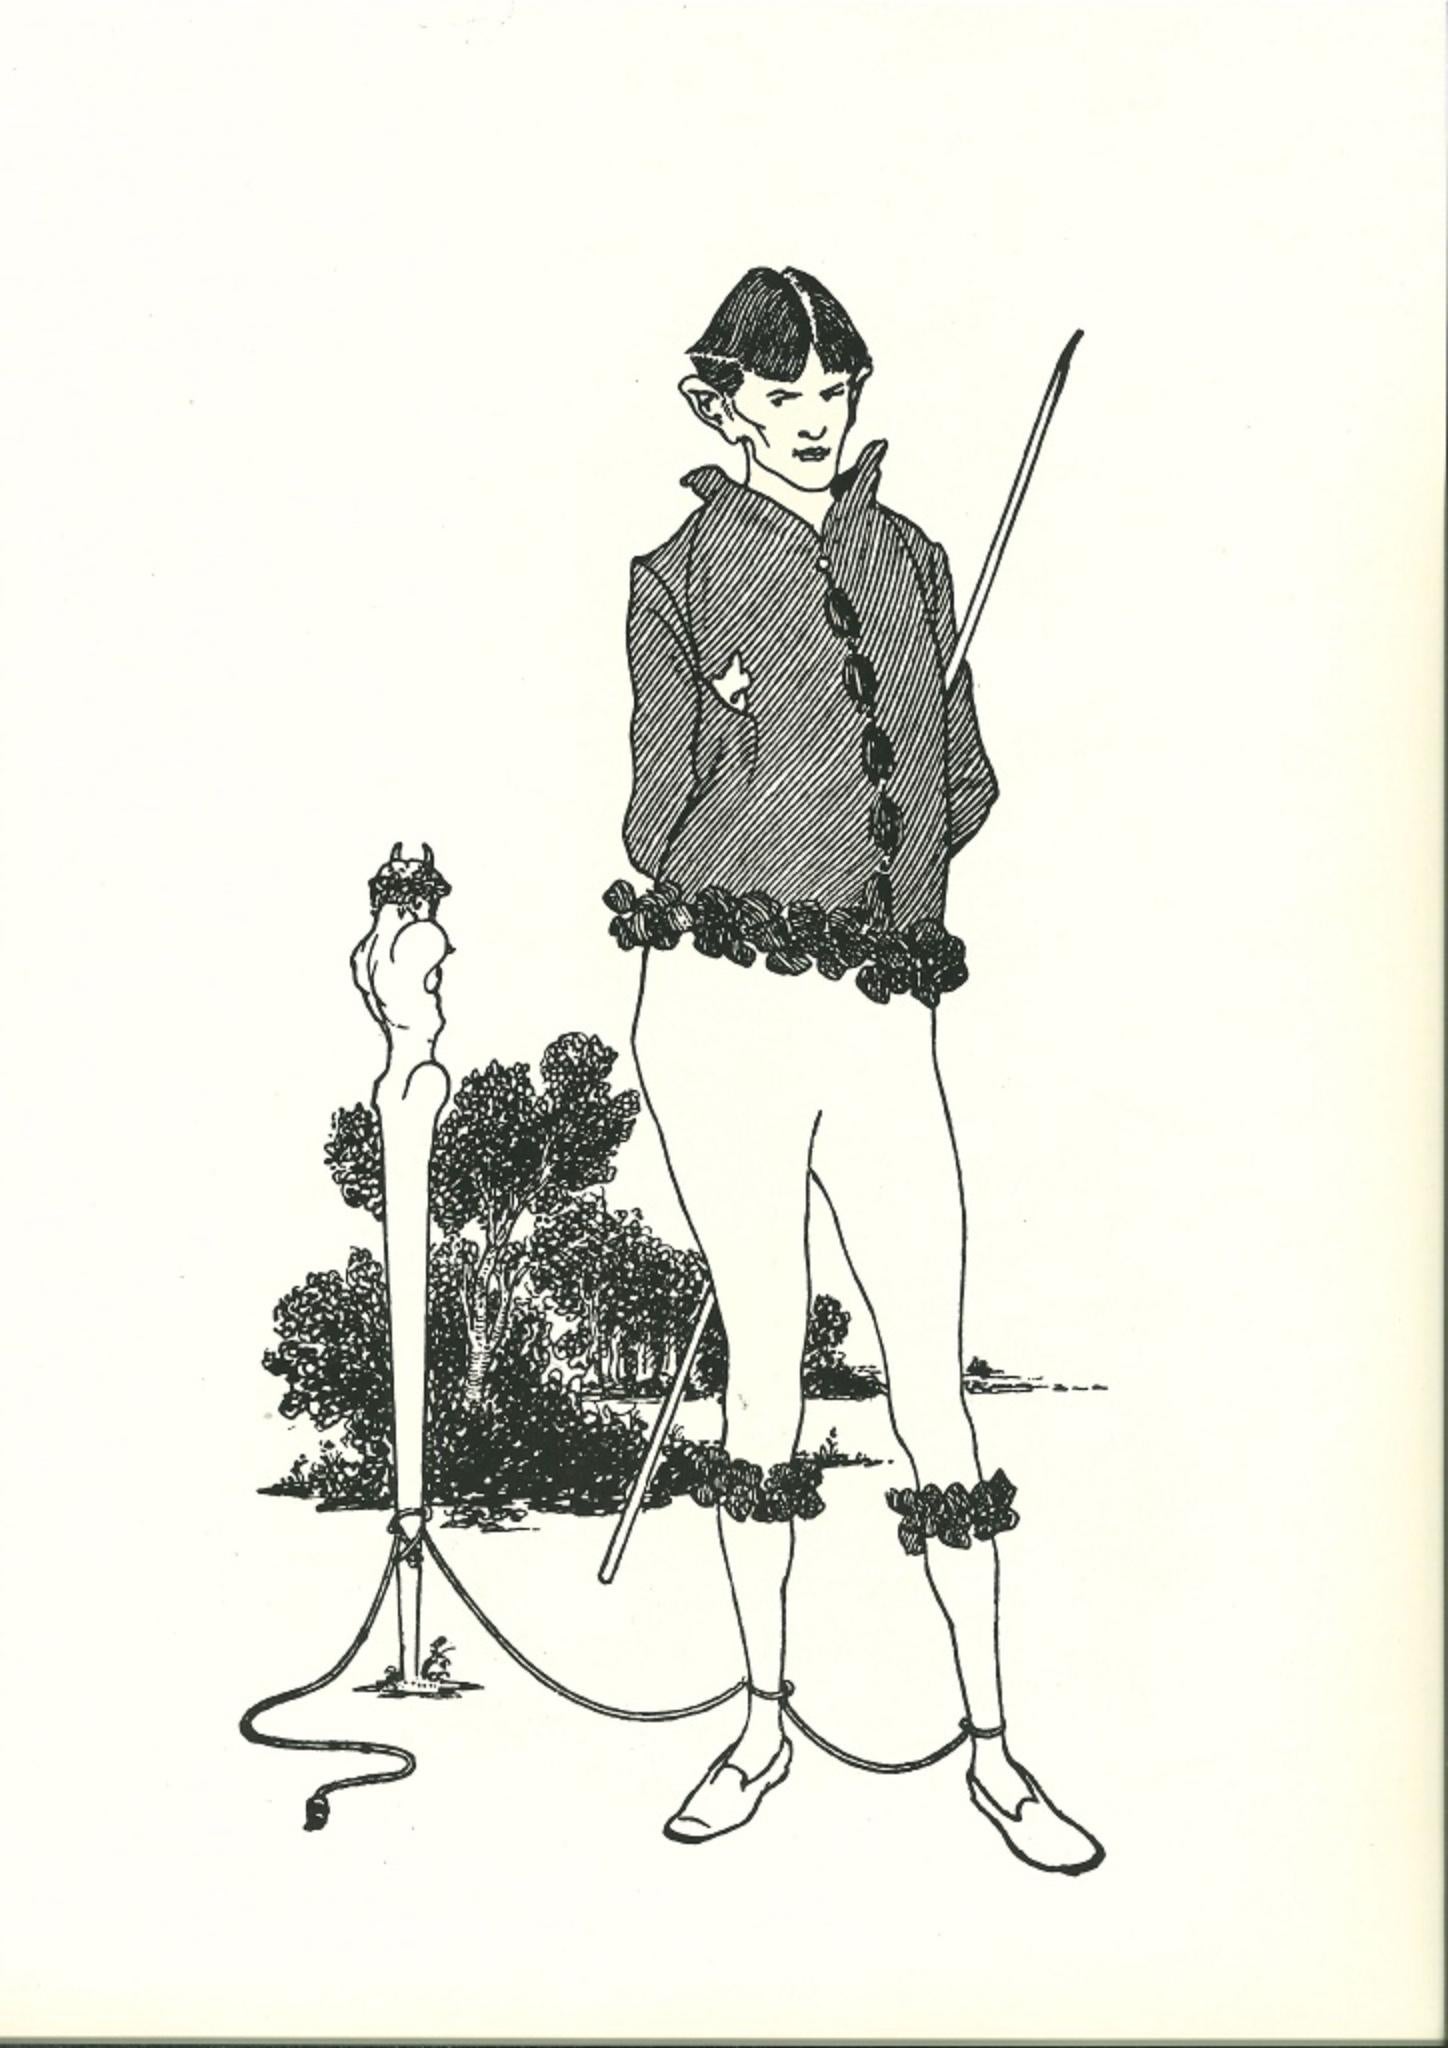 Aubrey Vincent Beardsley Figurative Print - La Marque du Pied (Autoportrait) - Lithograph after A. Beardsley - 1970